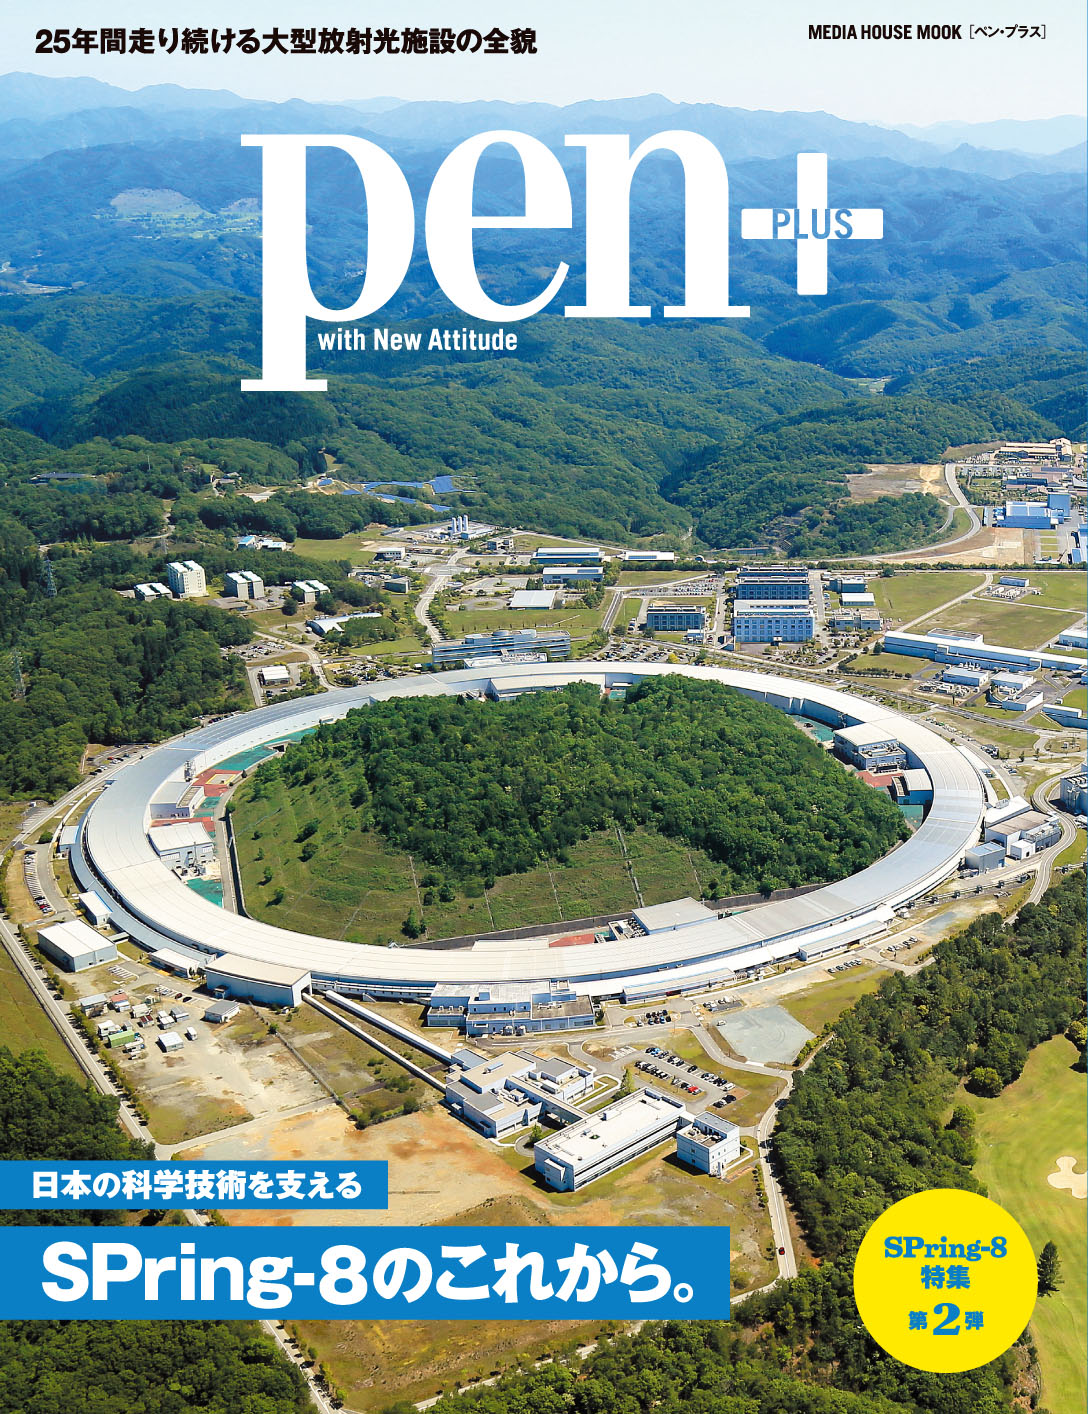 世界最高の性能を誇るSPring-8-Ⅱへの進化を掲げ、科学技術の未来を見据えるSPring-8の全貌を探るPen+最新刊「日本の科学技術を